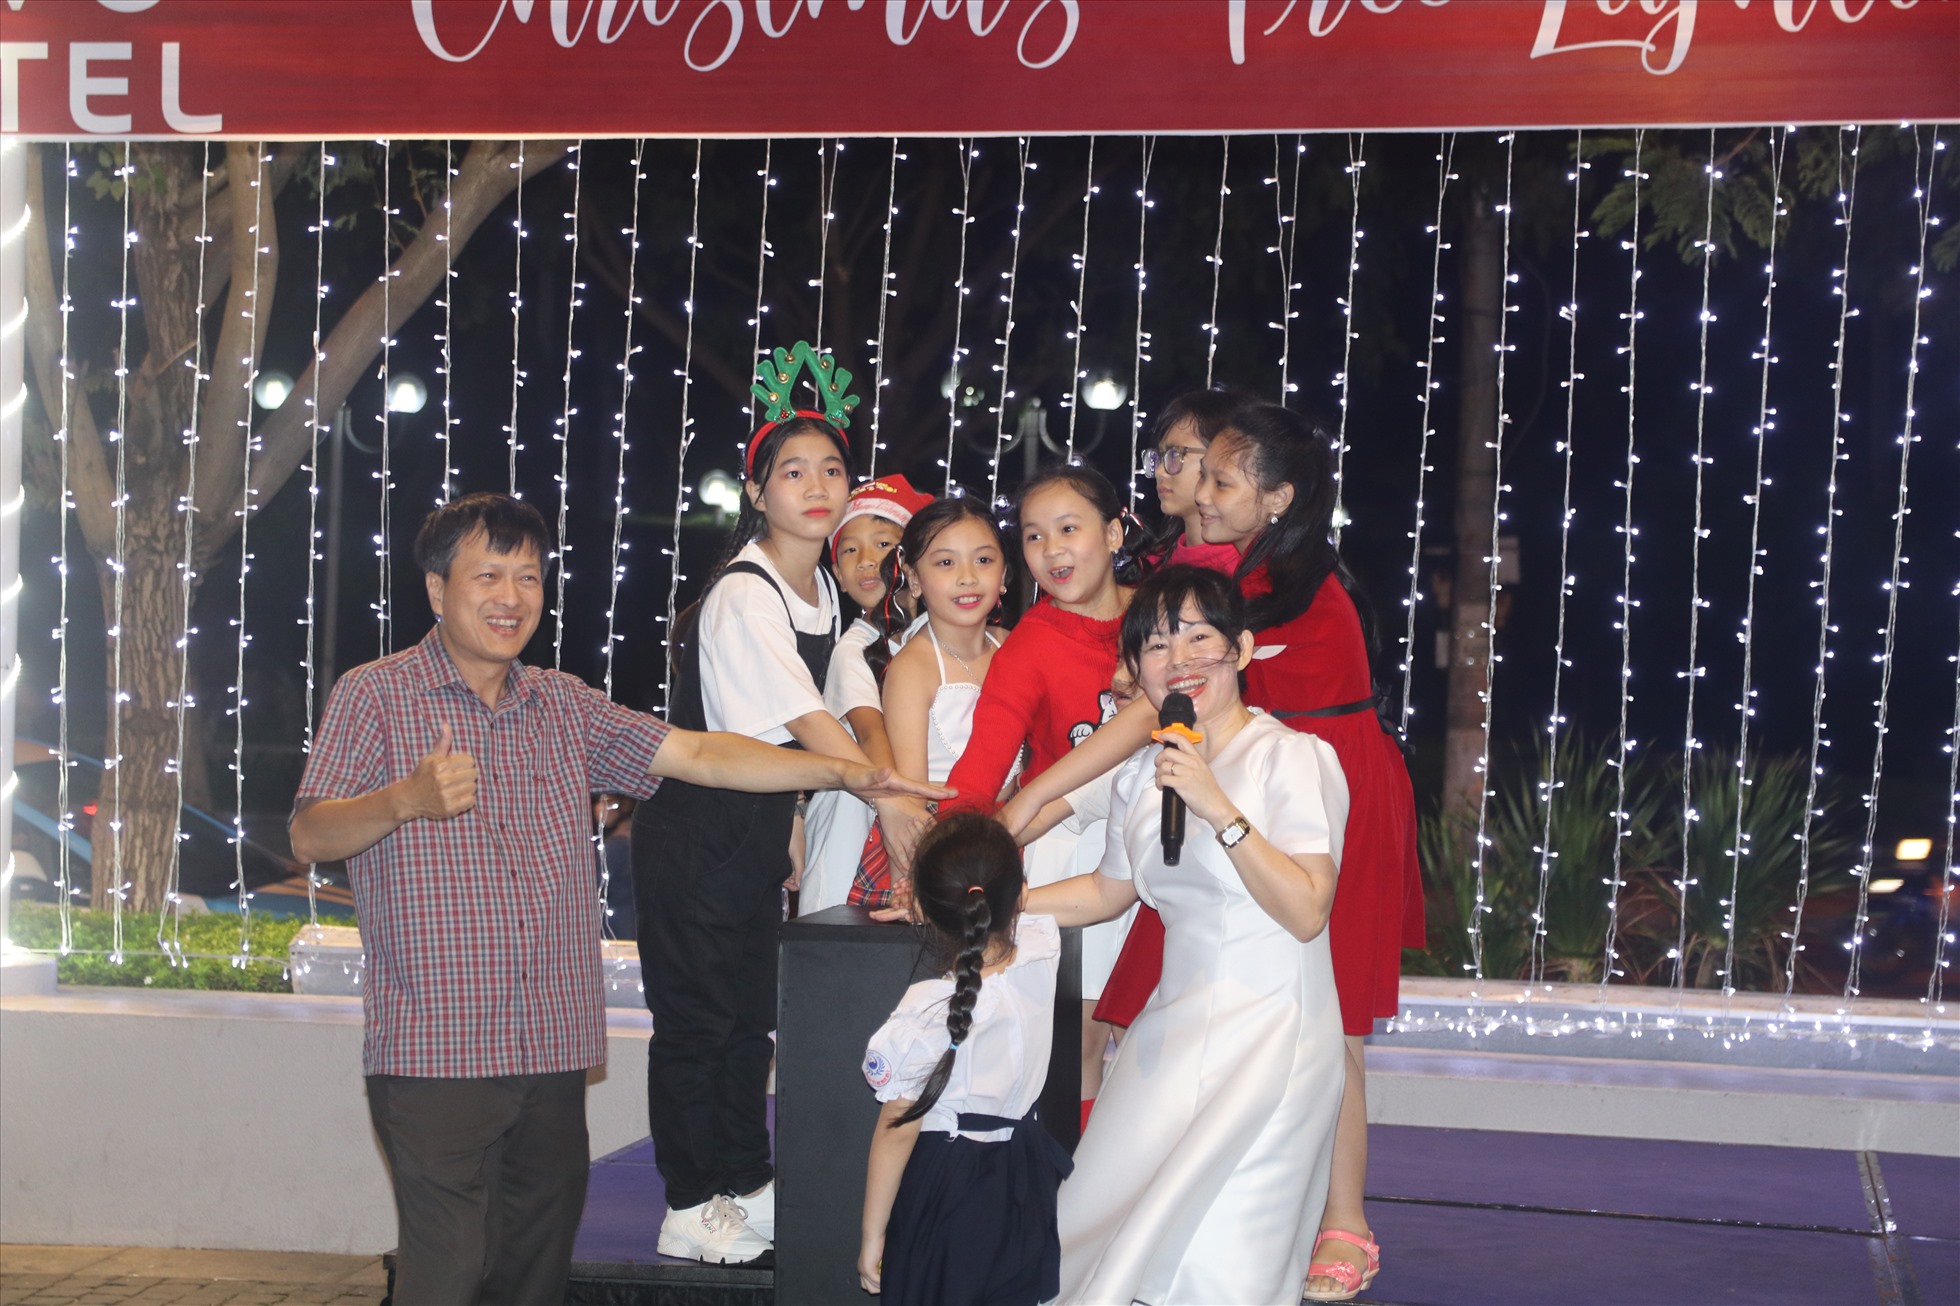 Từ tối 2.12, cùng với nhiều địa điểm khác, dộc dường biển TP Nha Trang nhiêu  khách  sạn lớn như:  Novotel Nha Trang, Sheraton Nha Trang… tổ chức lễ thắp sáng cây thông Noenl.